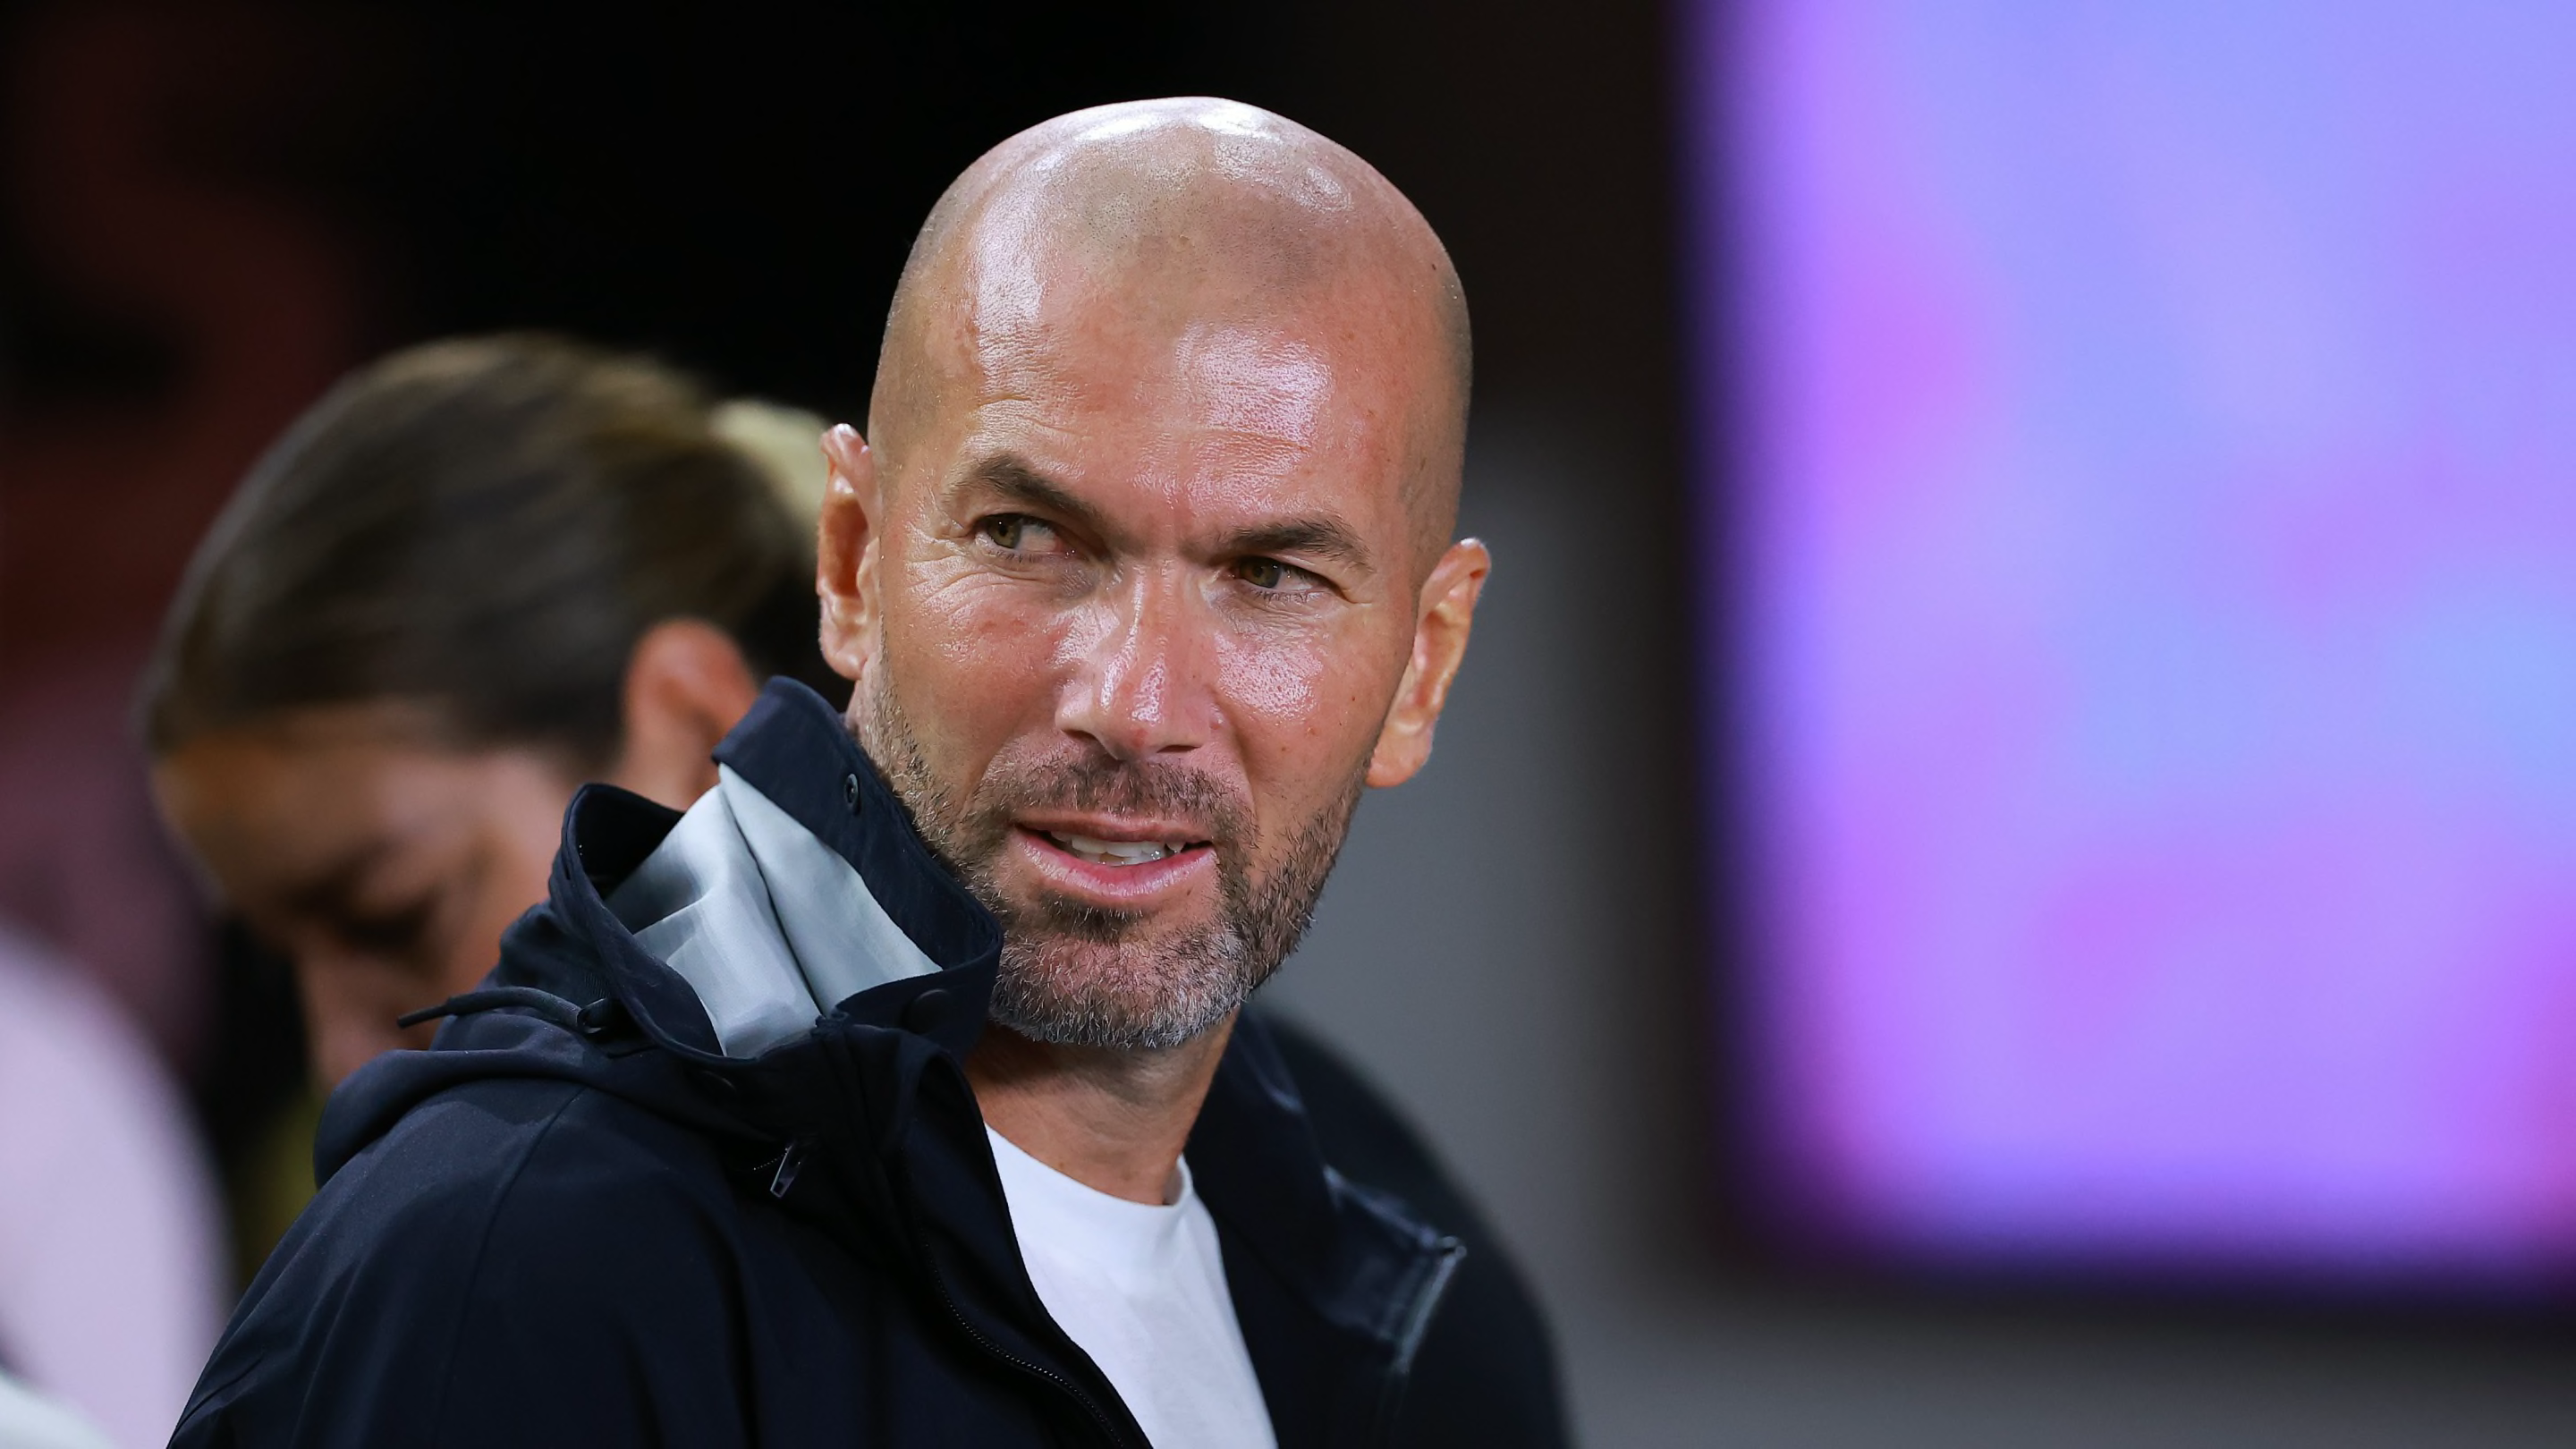 Bayern Munich director responds to rumoured Zinedine Zidane interest